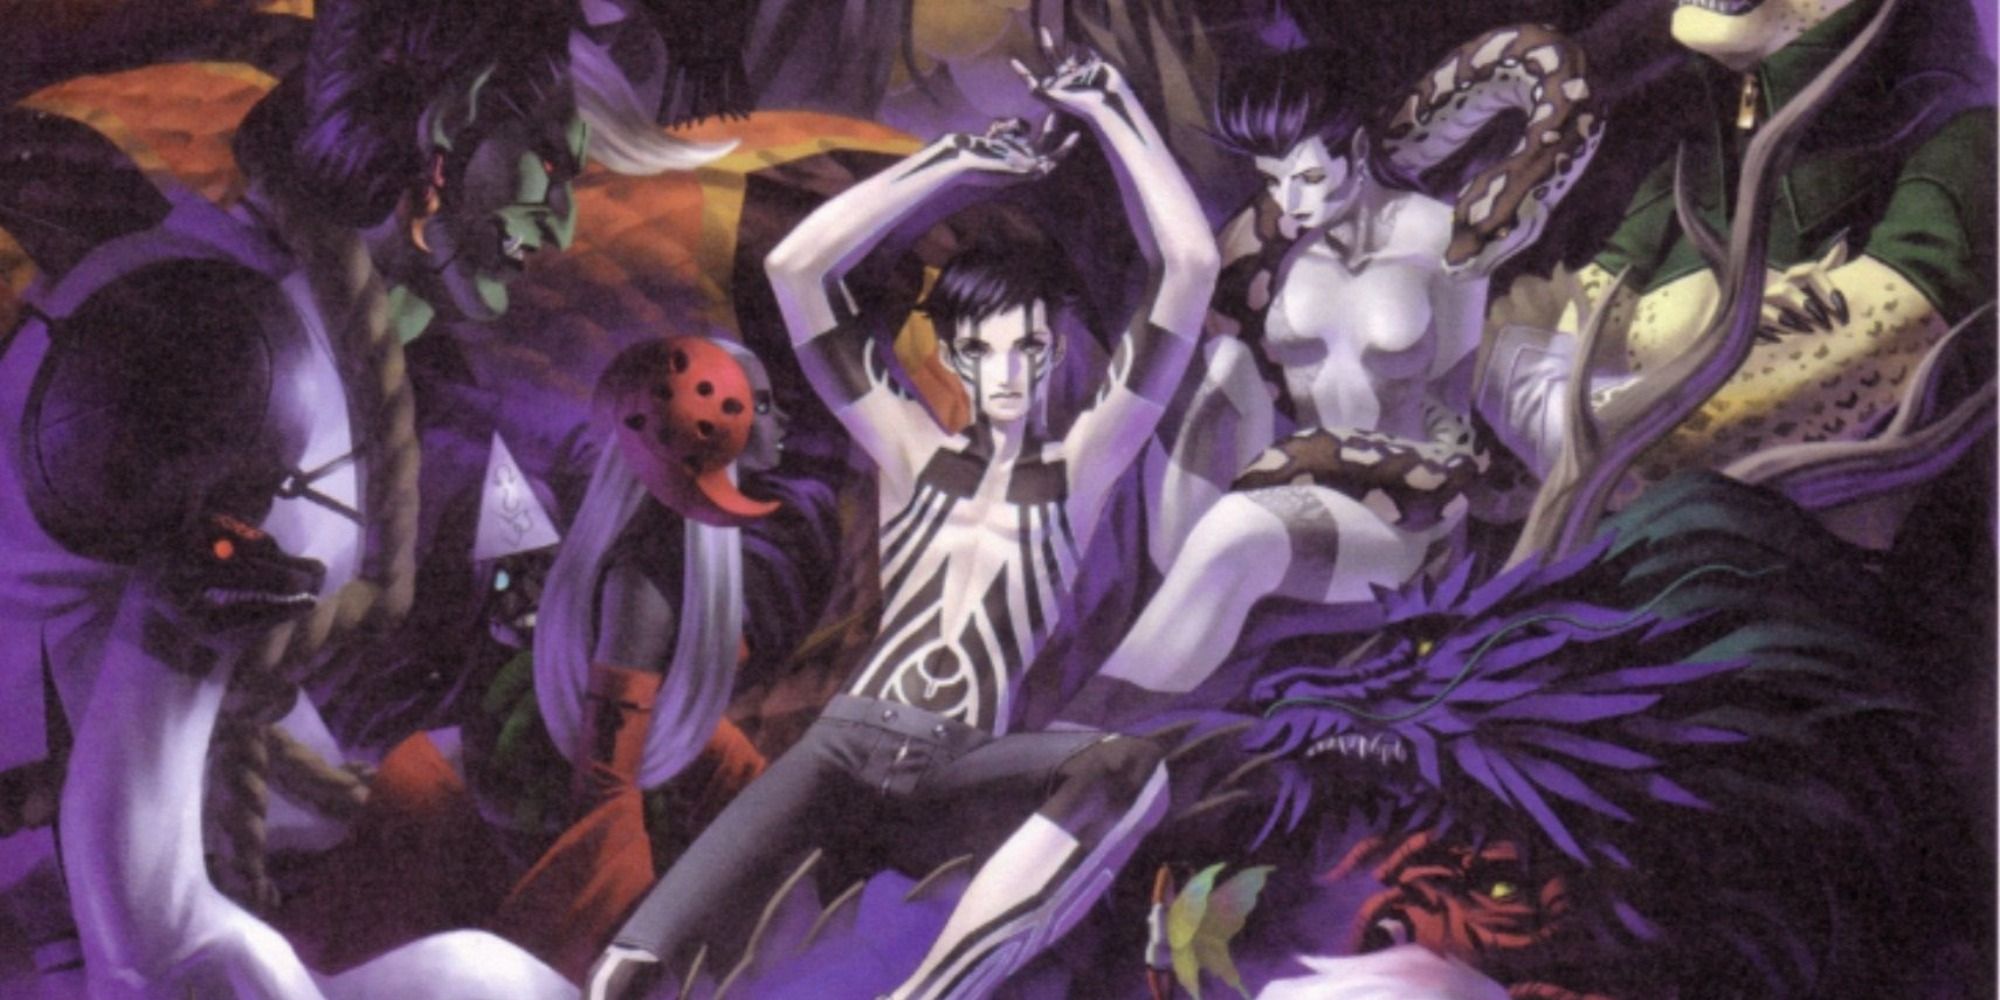 The Demi-fiend and Devils in Shin Megami Tensei 3: Nocturne